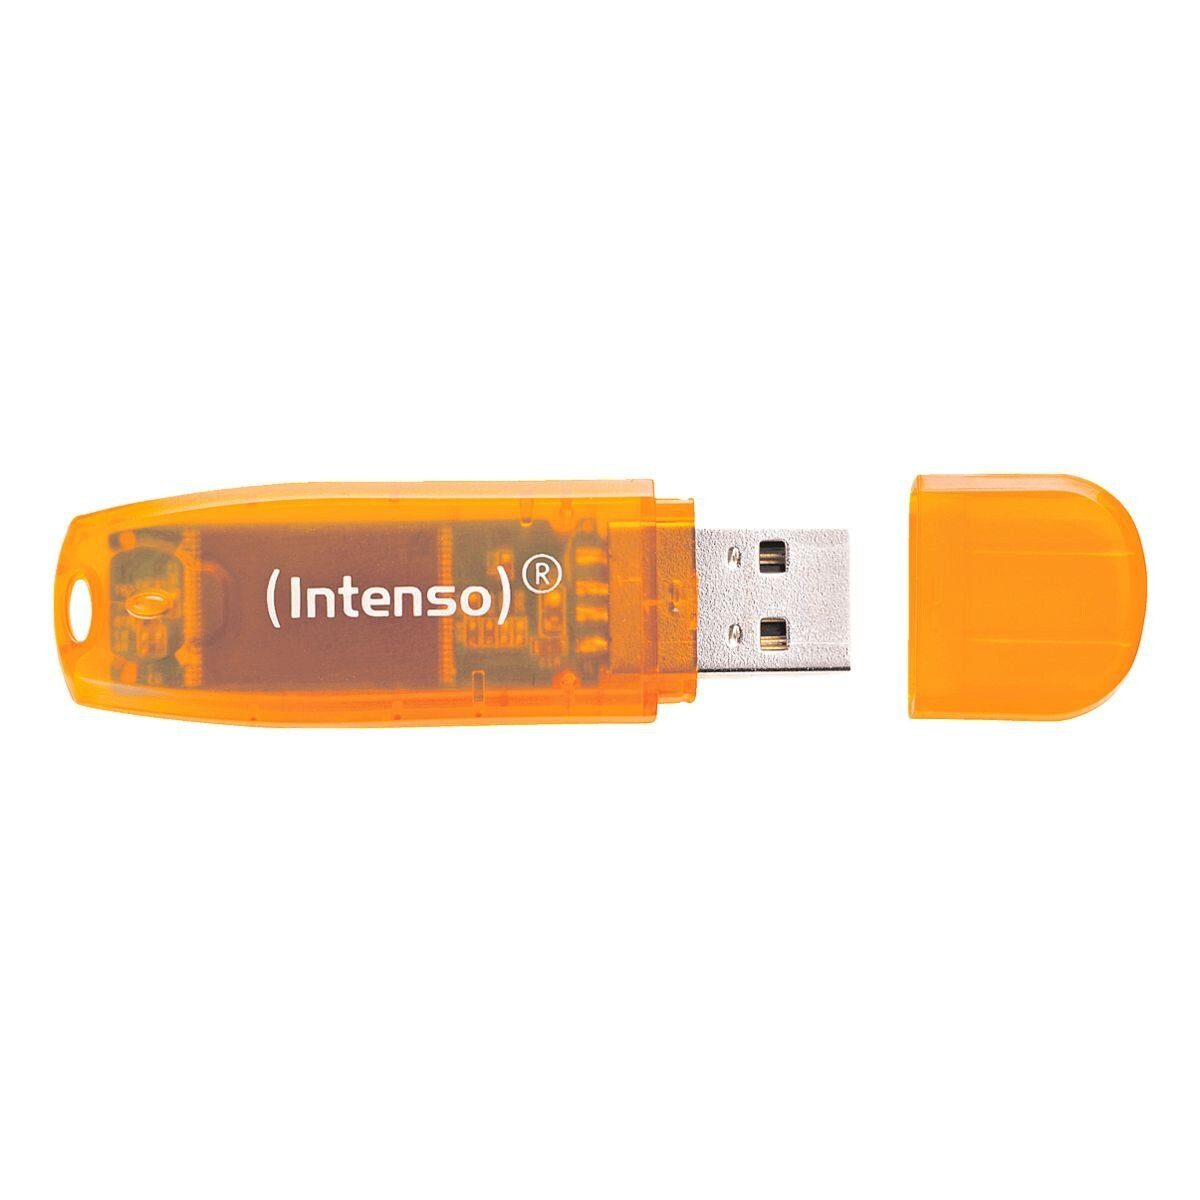 Intenso RainbowLine USB-Stick (Lesegeschwindigkeit 28 MB/s, in farbenfrohem Design)